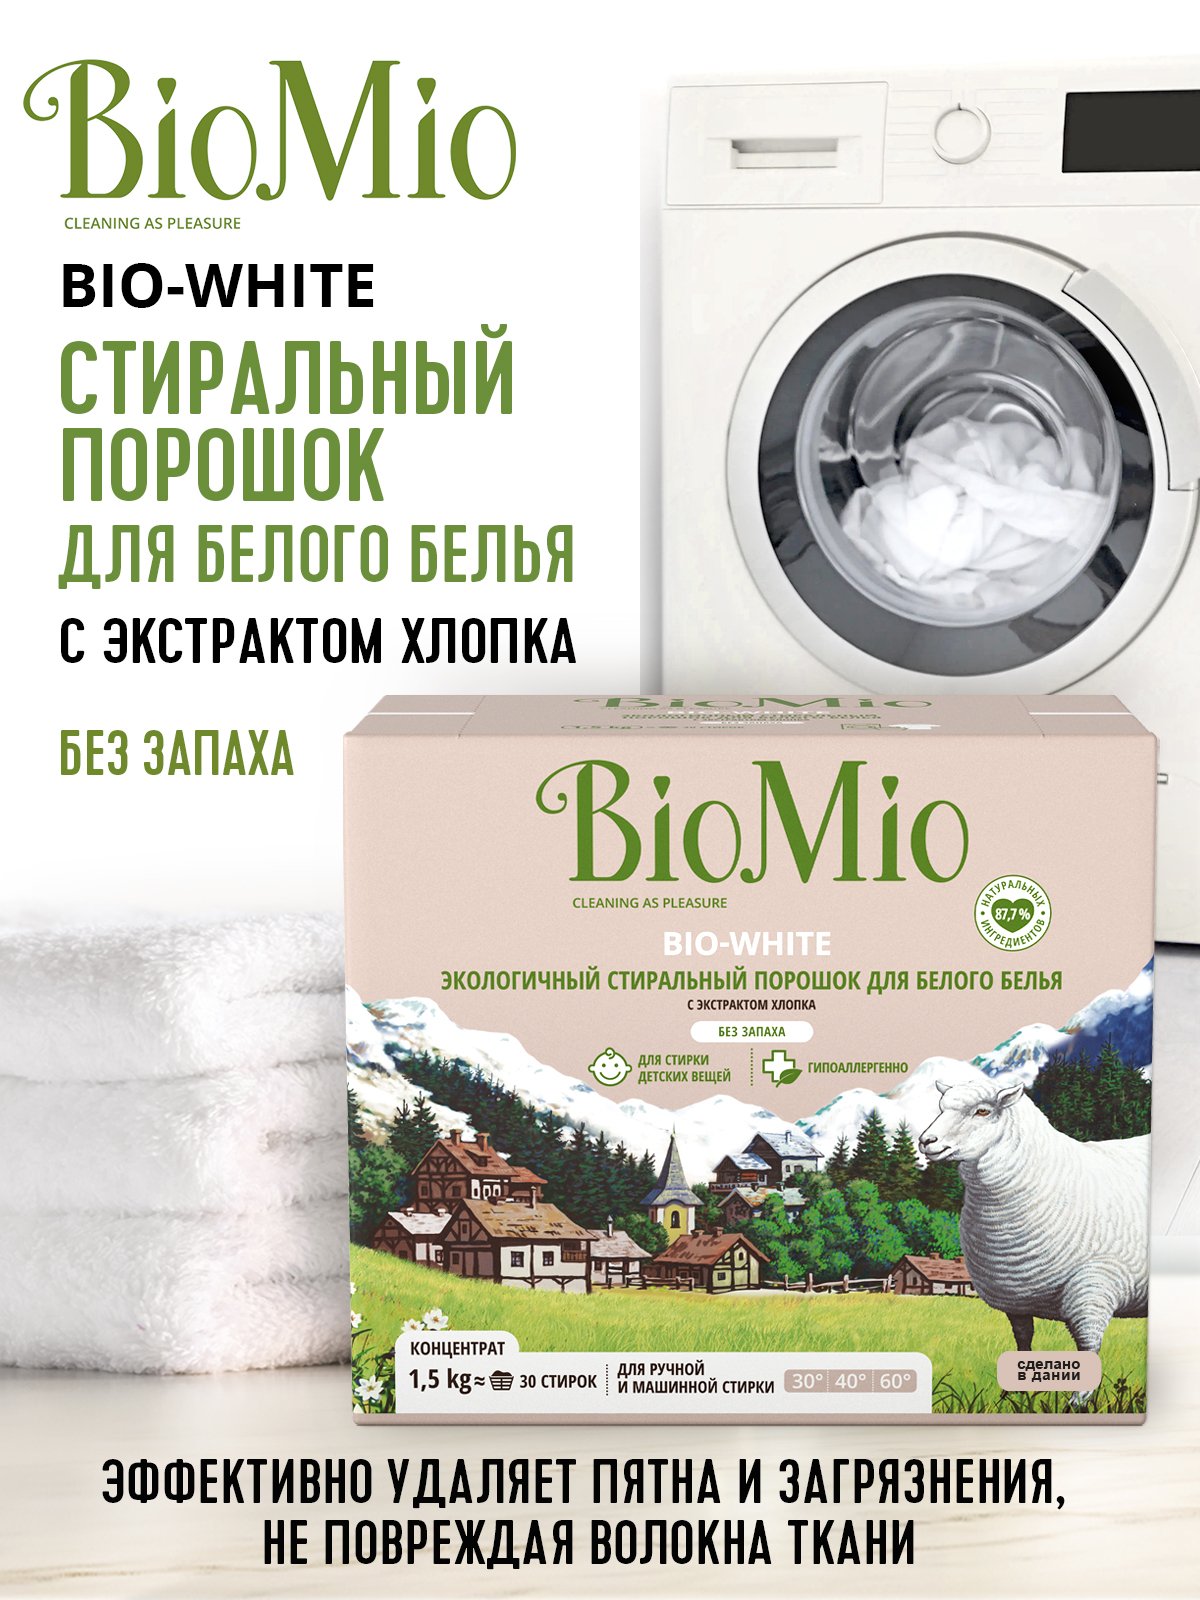 Стиральный порошок для белого белья BioMio Bio-White, концентрат, 1,5 кг - фото 8